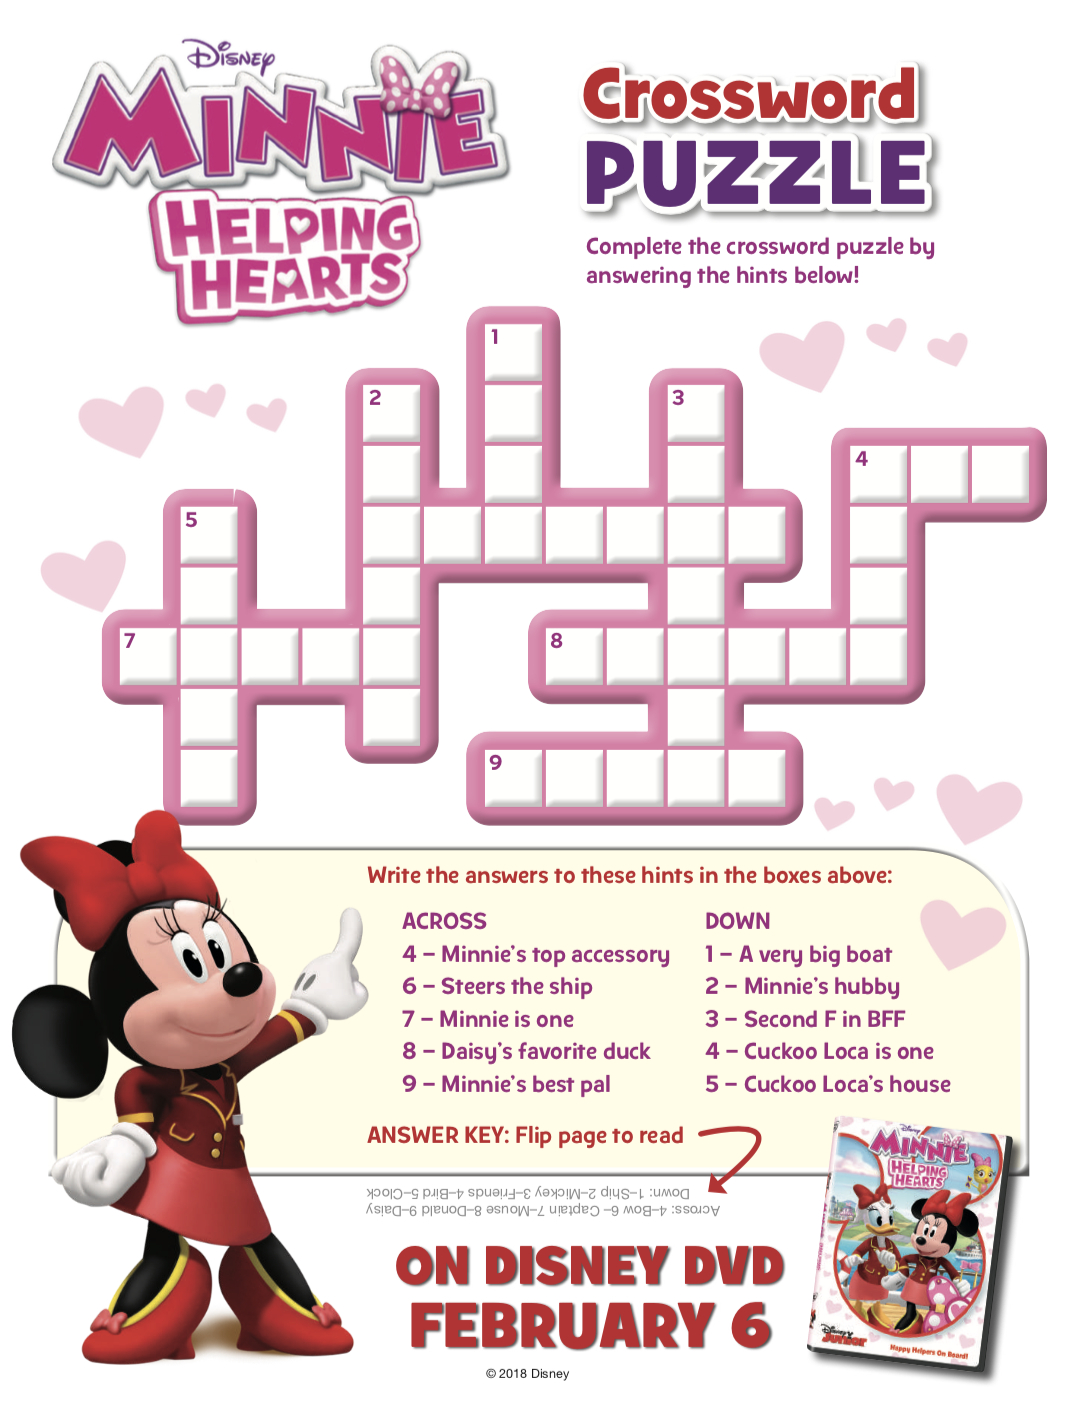 11 Fun Disney Crossword Puzzles | Kittybabylove - Crossword Puzzle Printable Disney